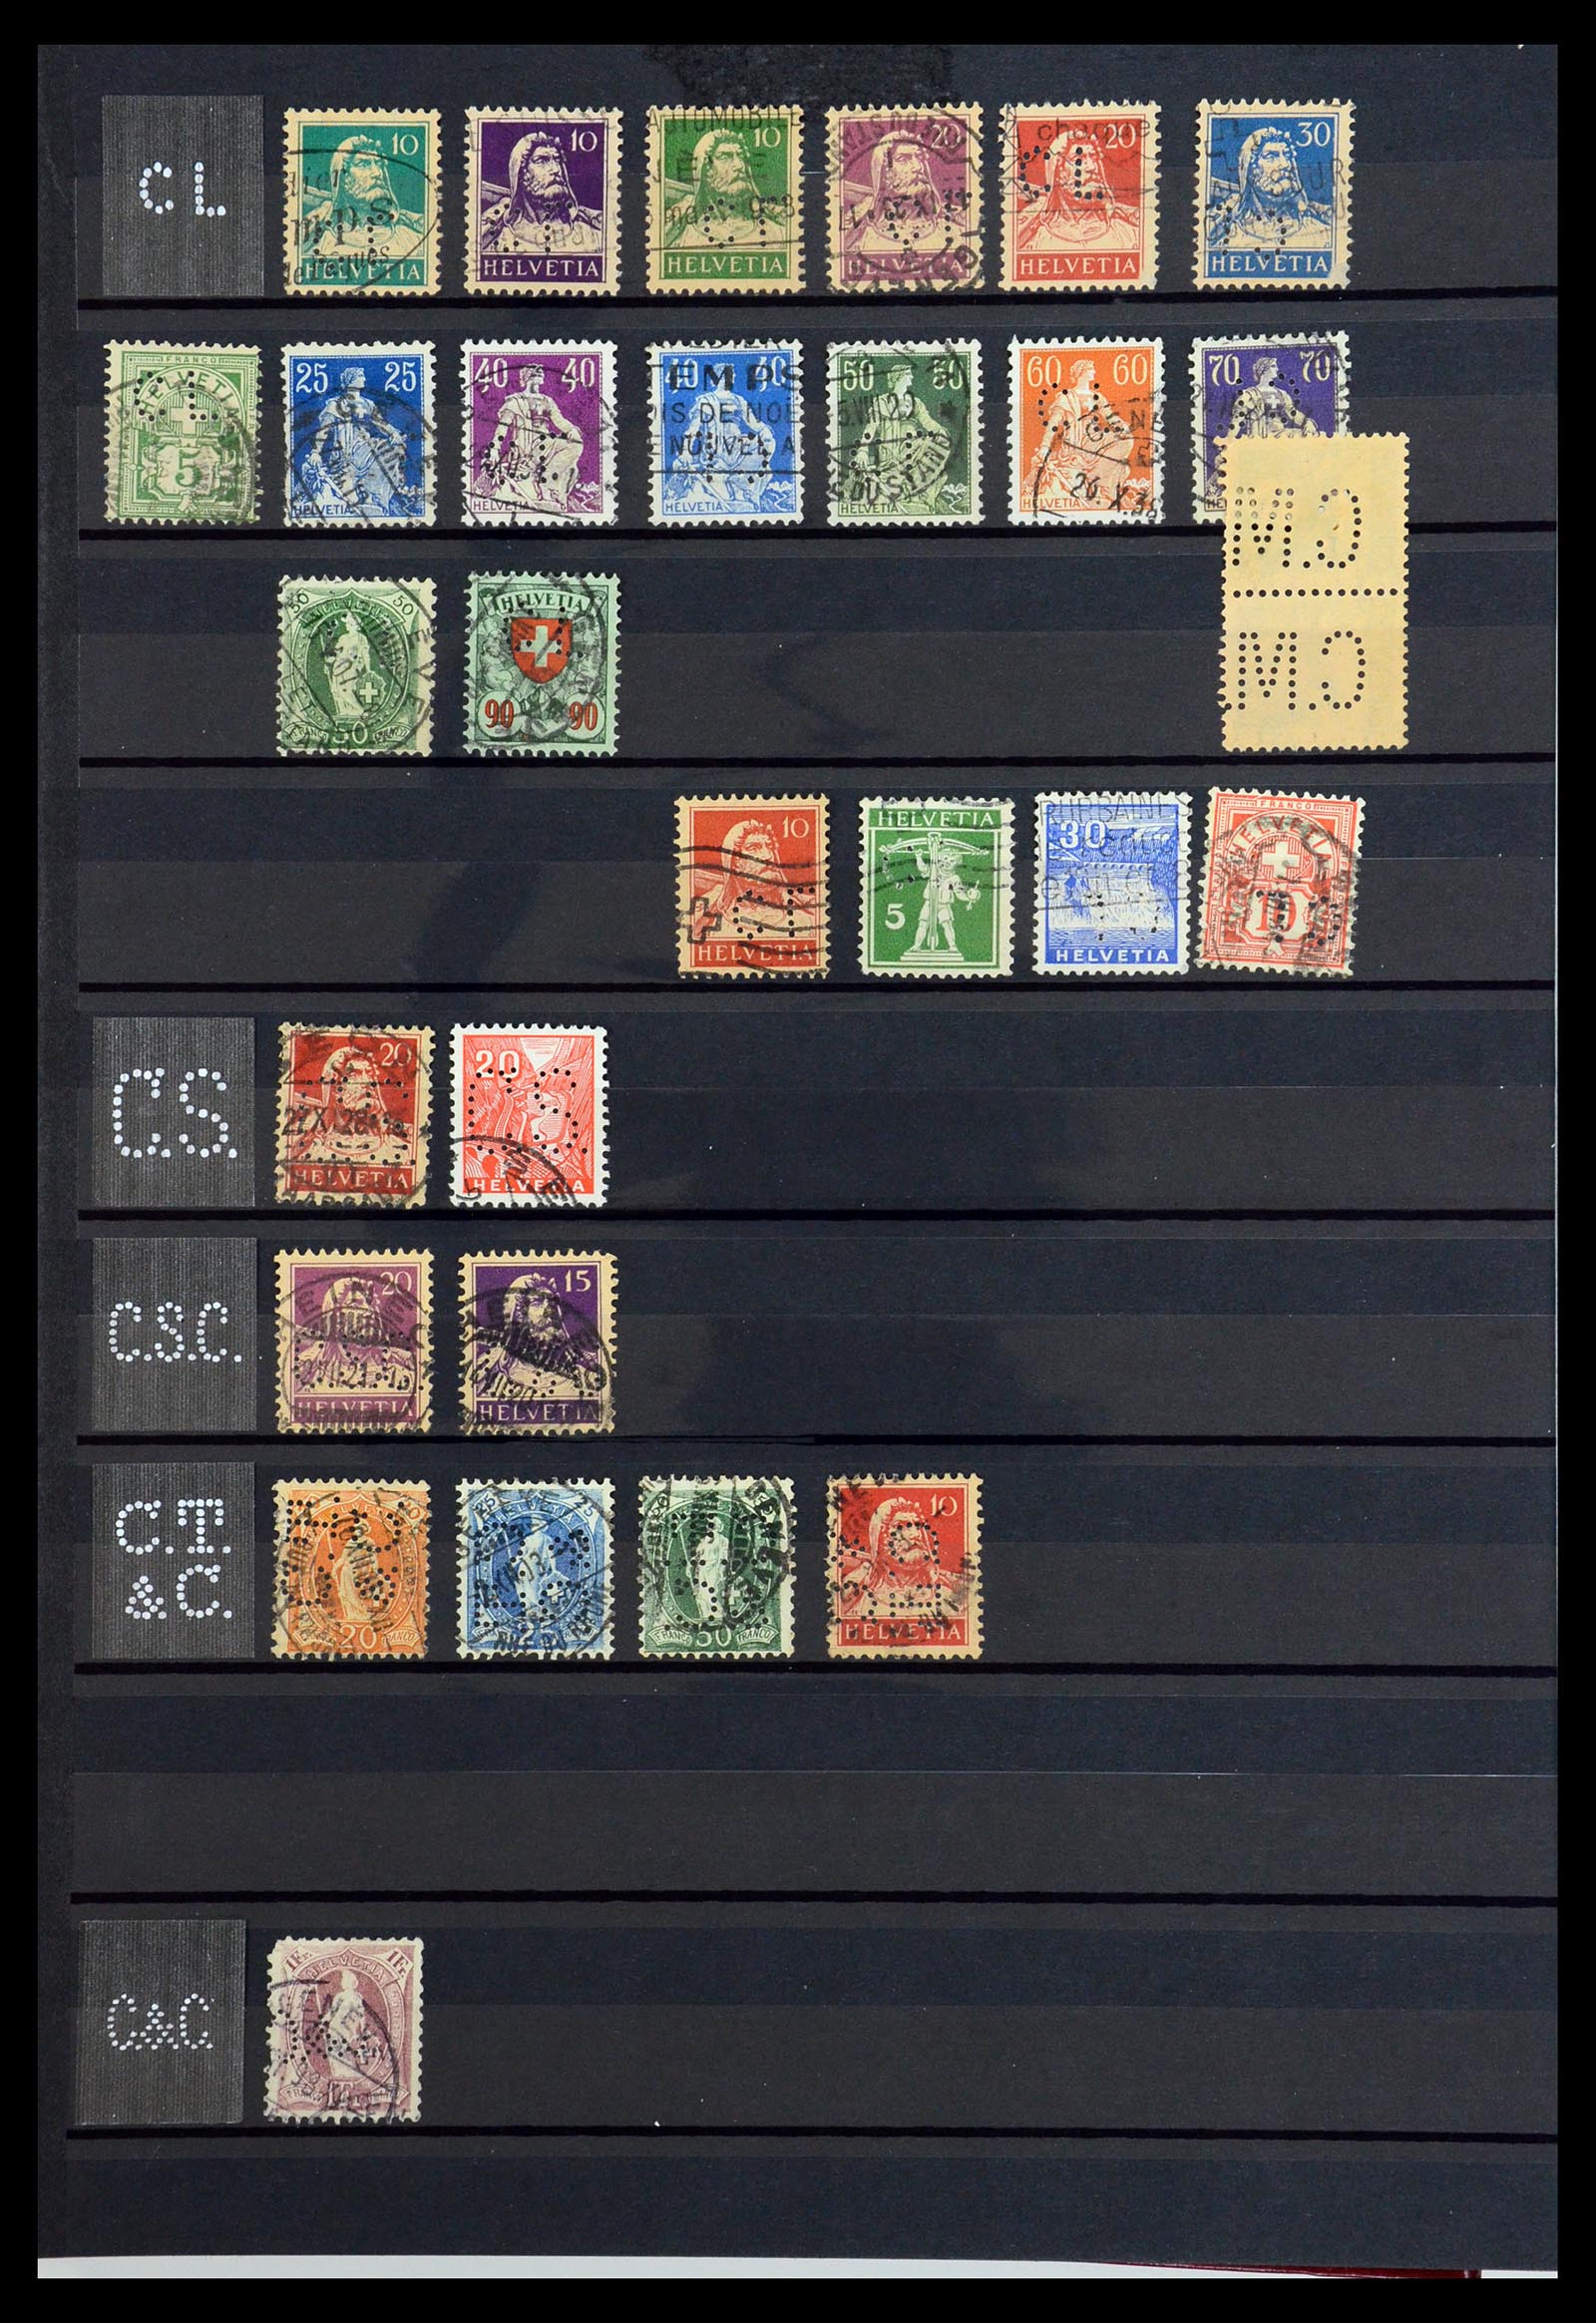 36372 012 - Stamp collection 36372 Switzerland perfins 1880-1960.